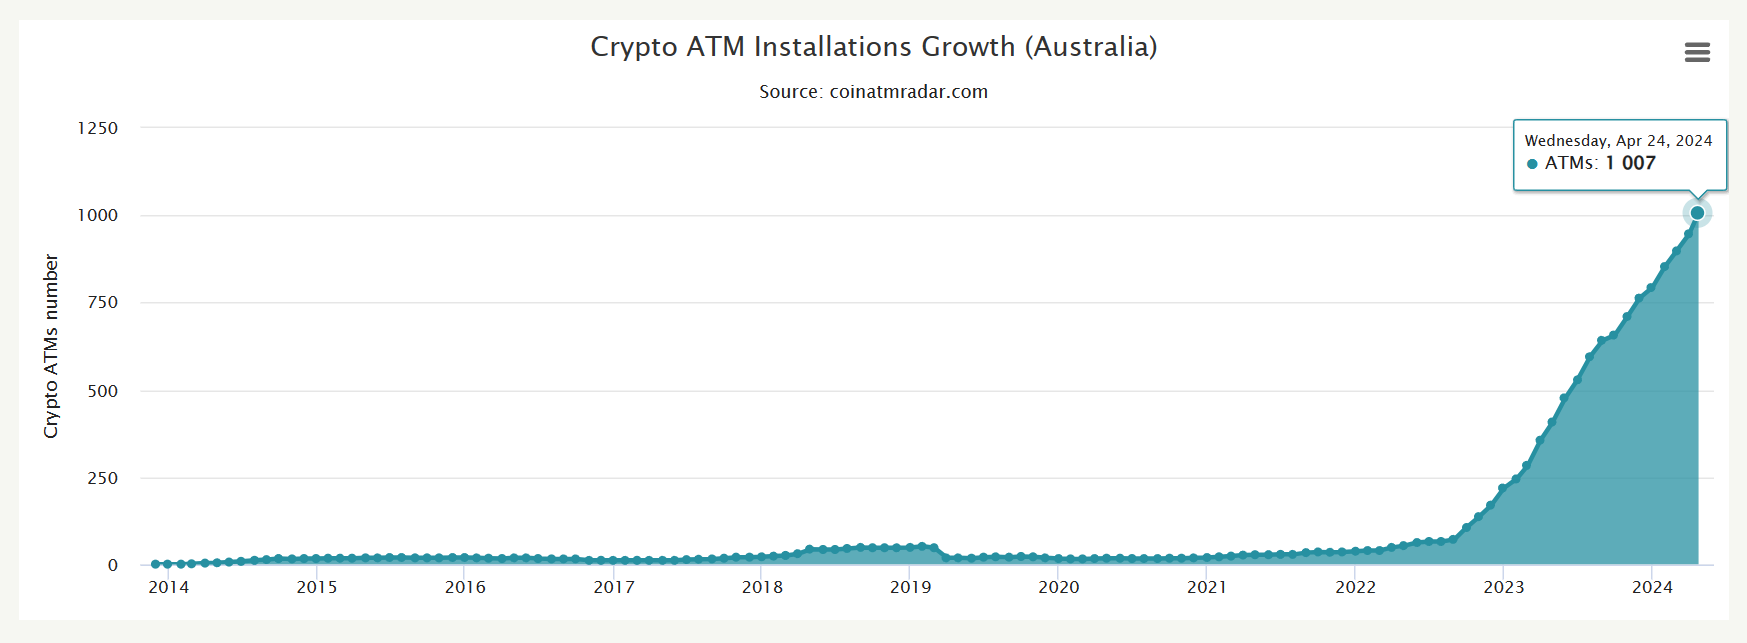 Tổng số máy ATM Bitcoin được lắp đặt tại Úc theo thời gian. 